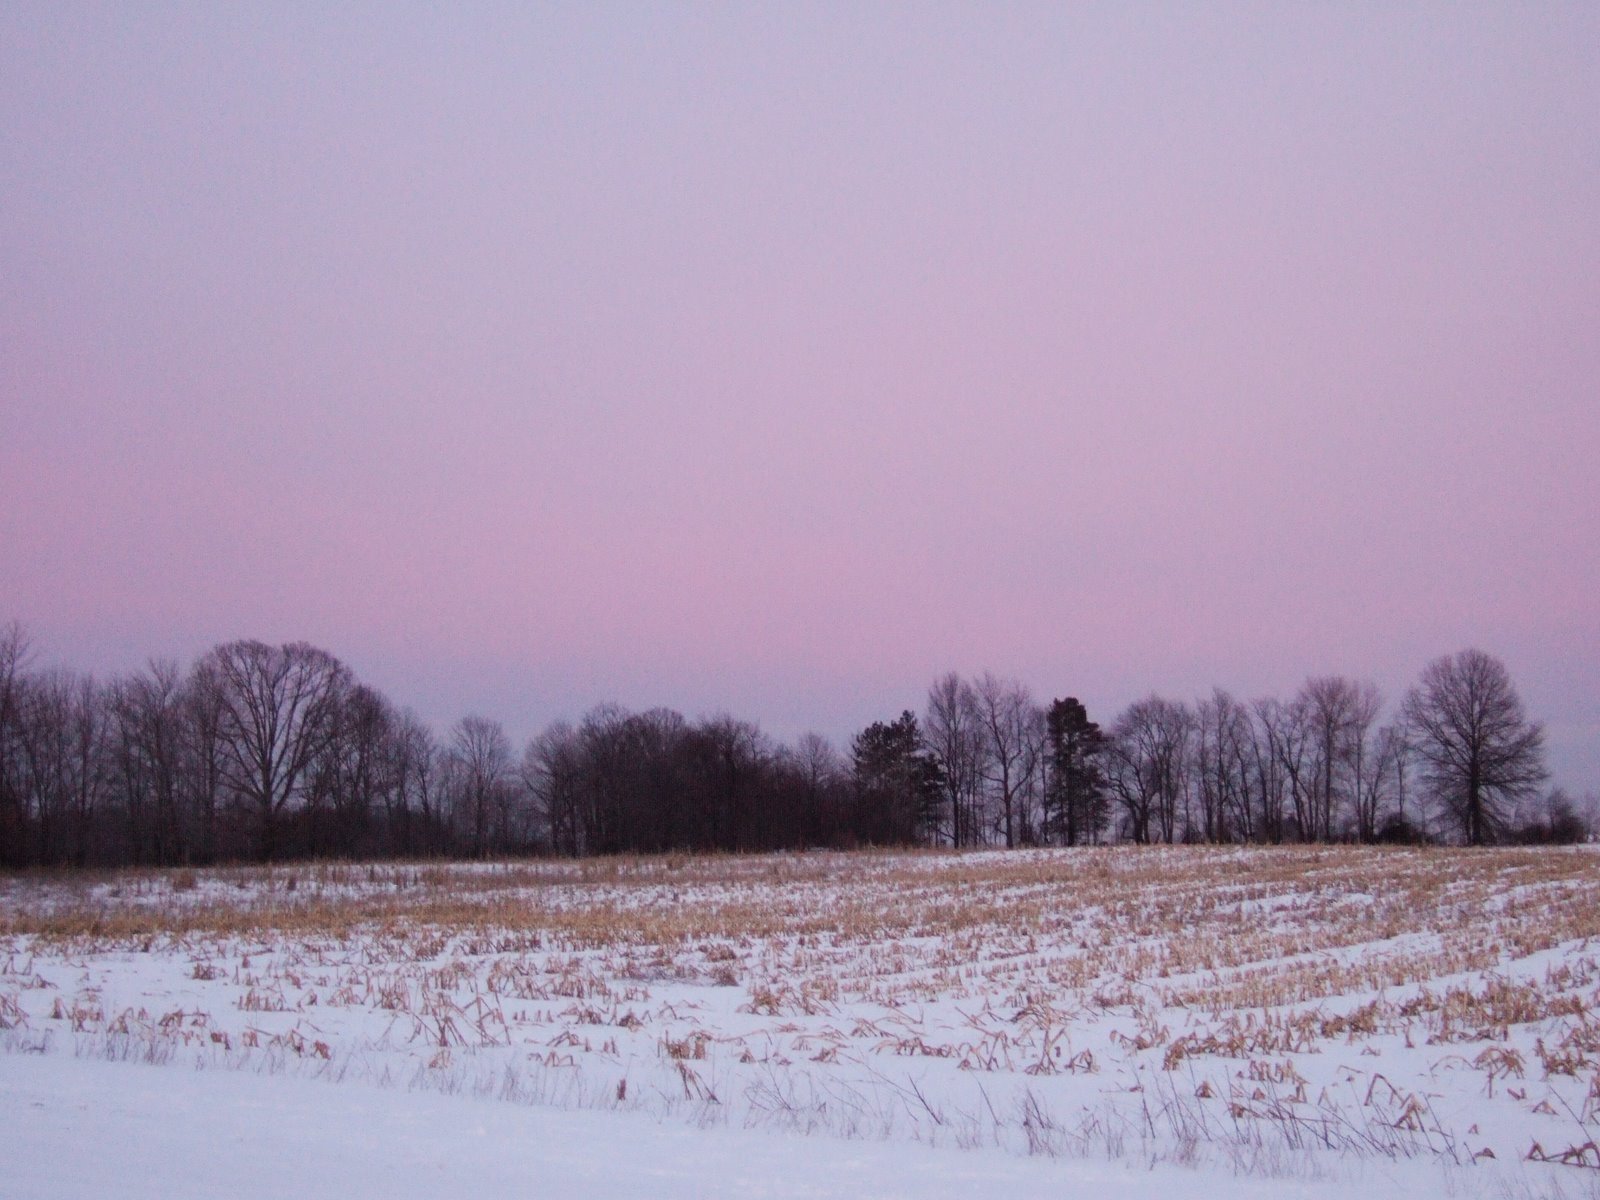 [a_purple_february_sky.jpg]